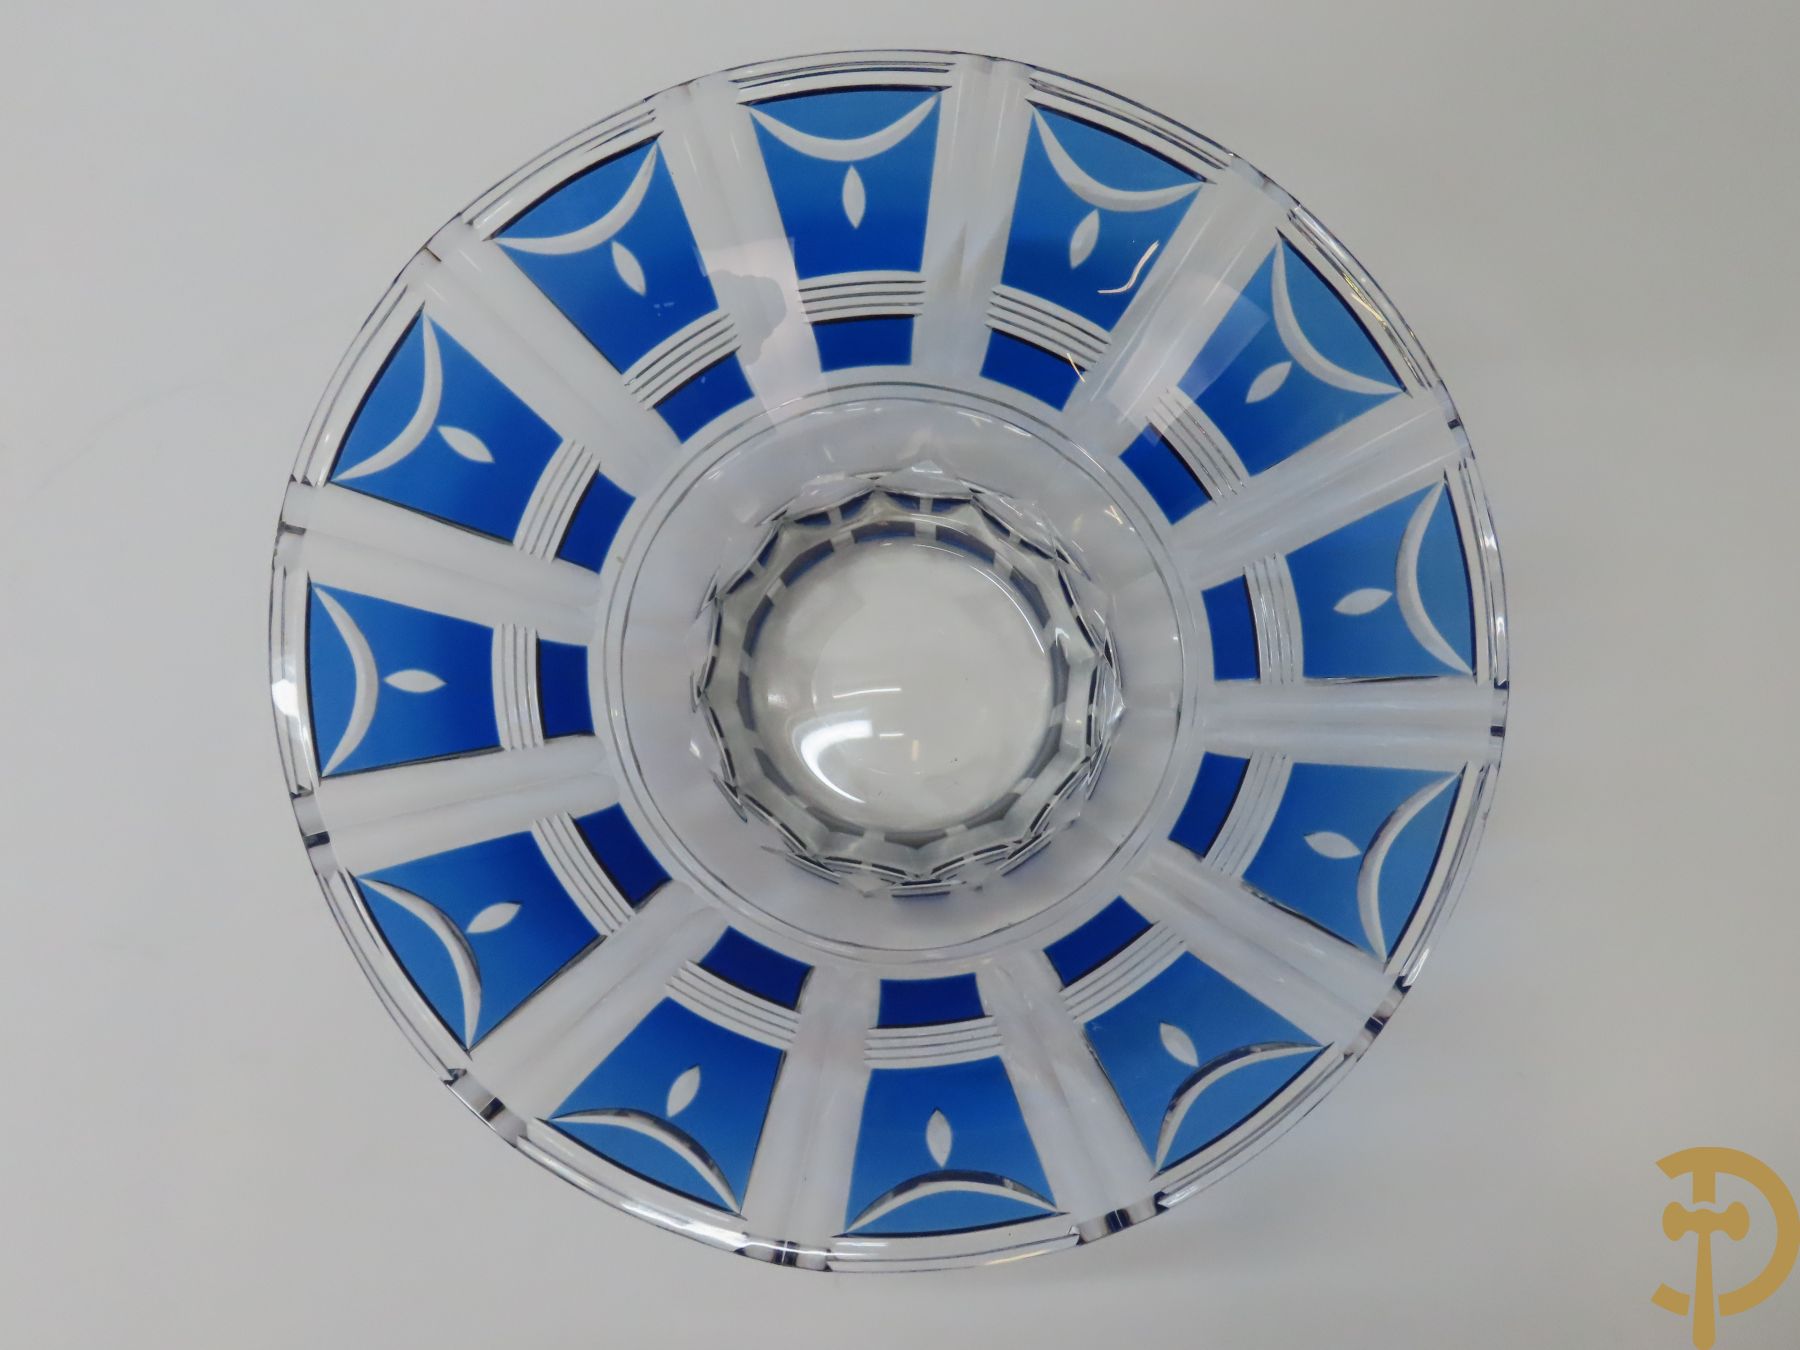 Blauwe handgeslepen kristallen Val-Saint-Lambert coupe, Art Deco periode